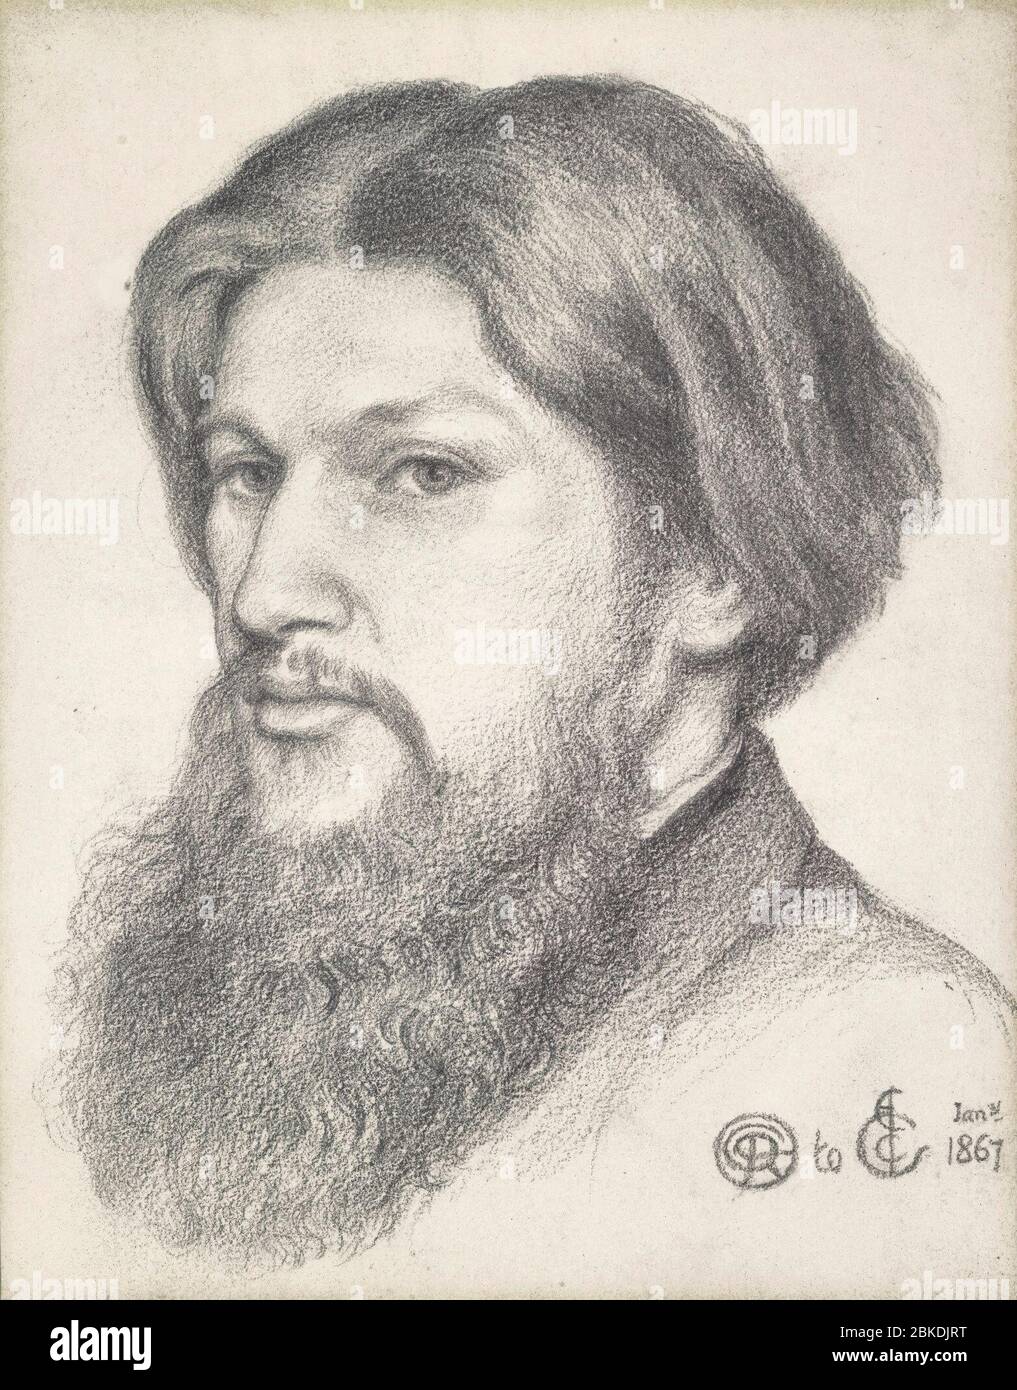 Portrait de Ford Madox Brown - Dante Gabriel Rossetti, 31 janvier 1867 Banque D'Images